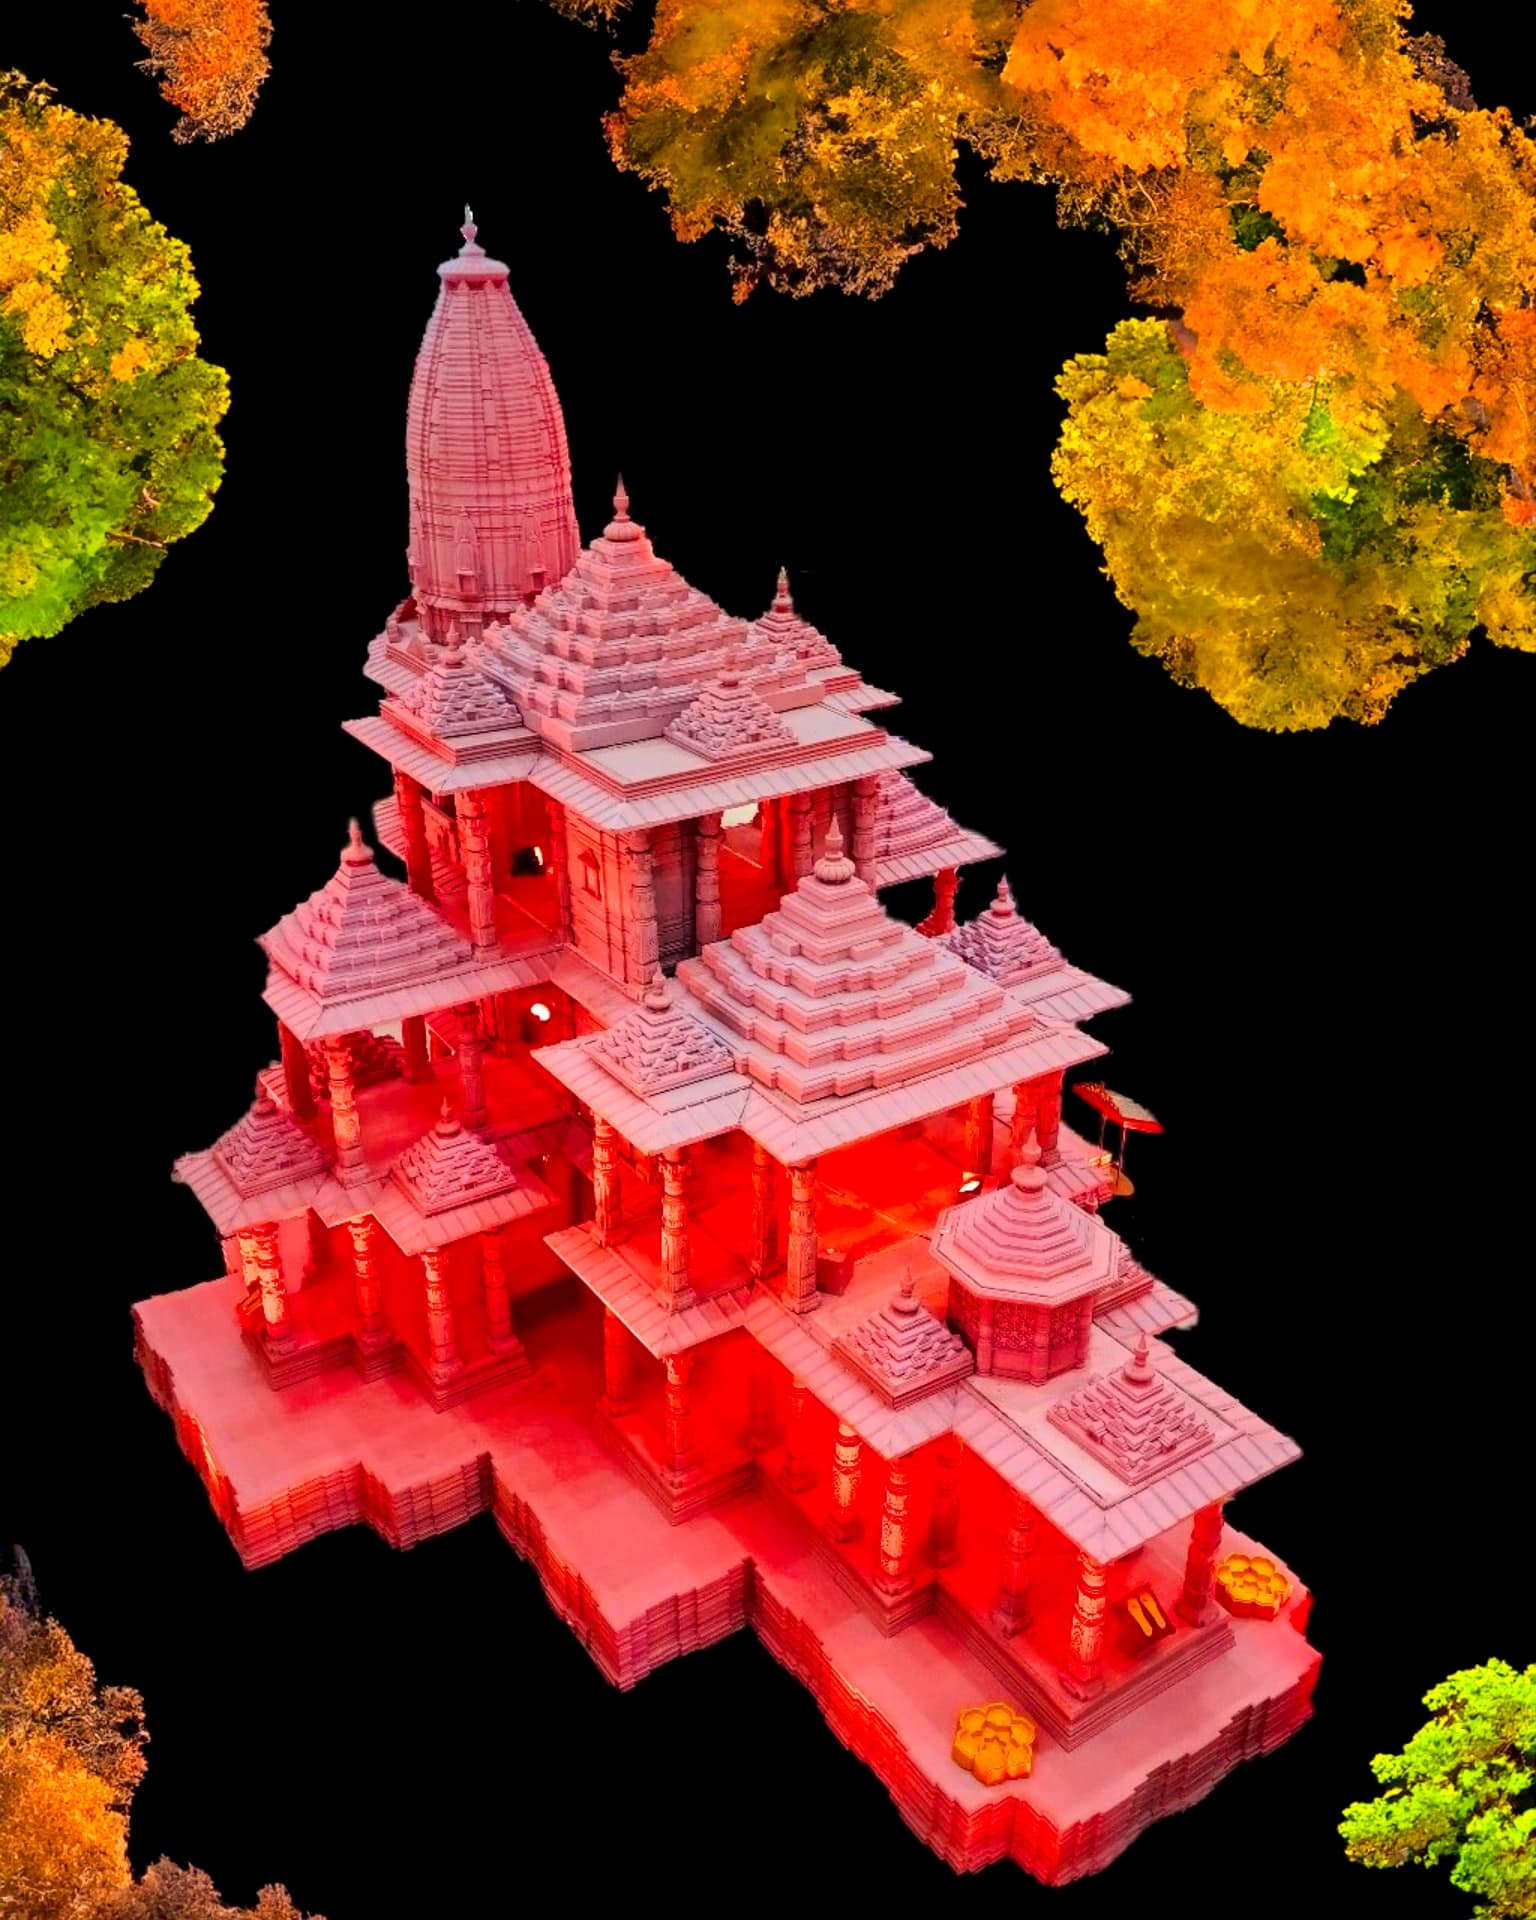 २०२३ च्या दिवाळीच्या मुहूर्तावर बनवलेले अयोध्या राम मंदिराची प्रतिकृती